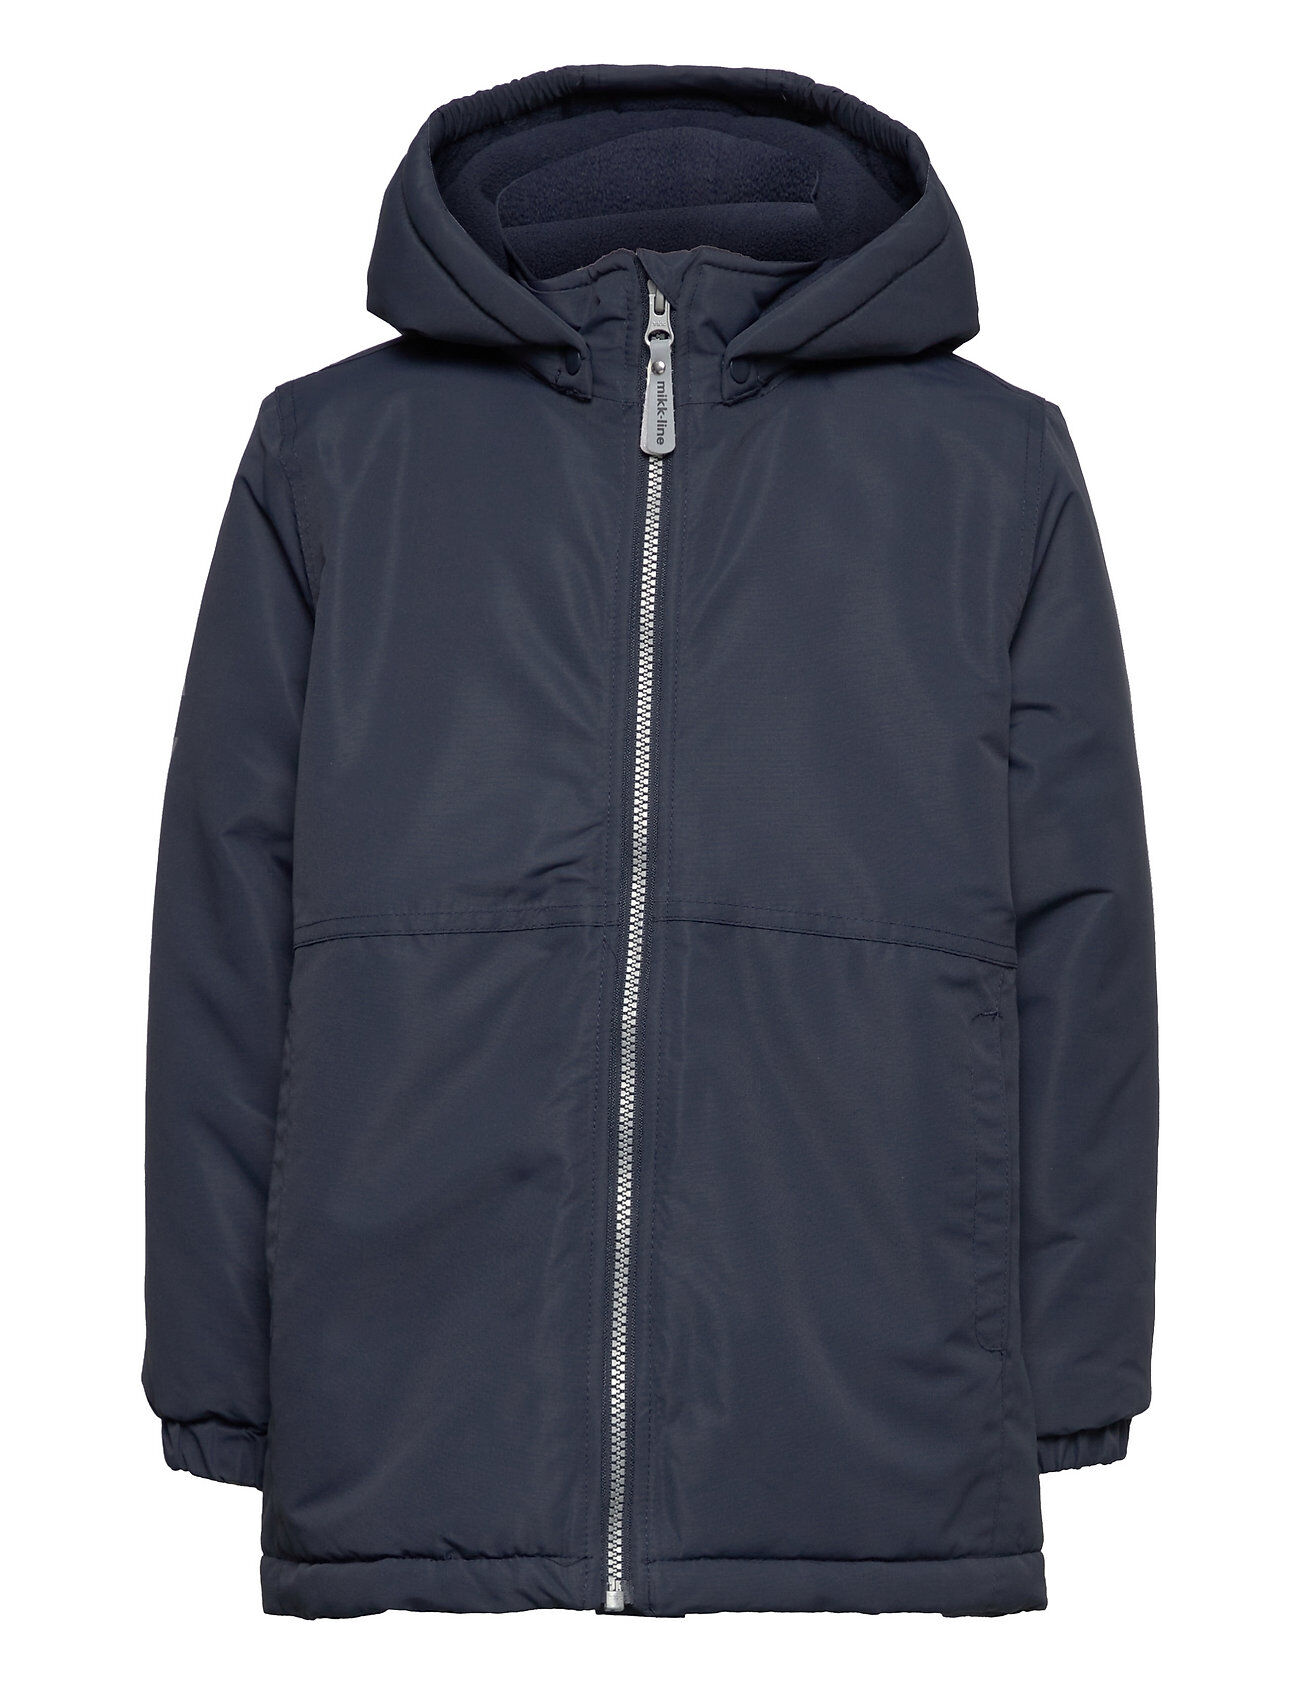 Mikk-Line Snow Boys Jacket Outerwear Snow/ski Clothing Snow/ski Jacket Blå Mikk-Line